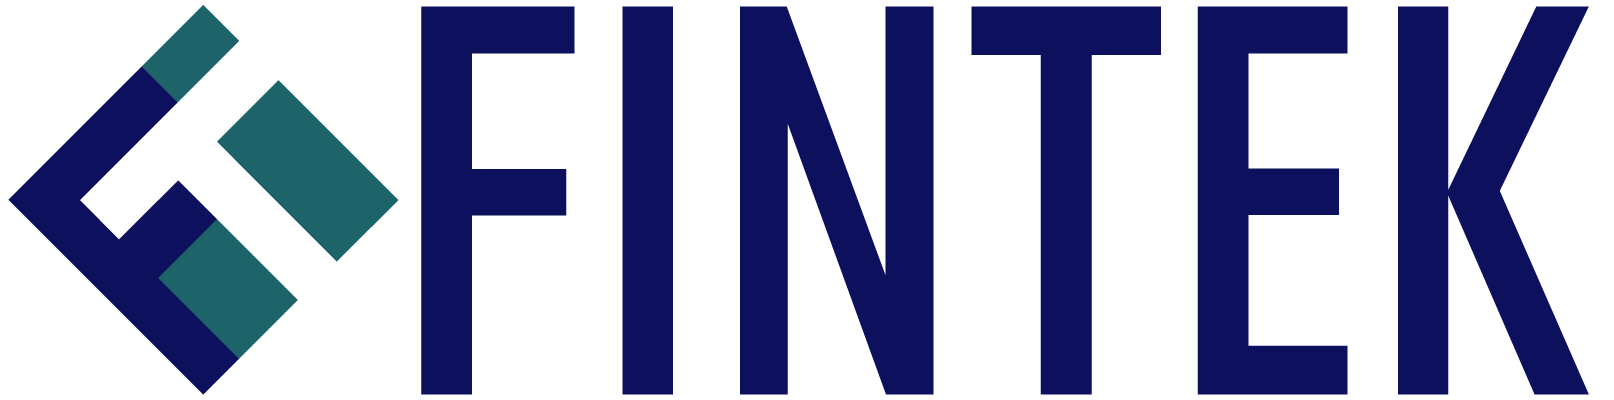 Fintek logo text